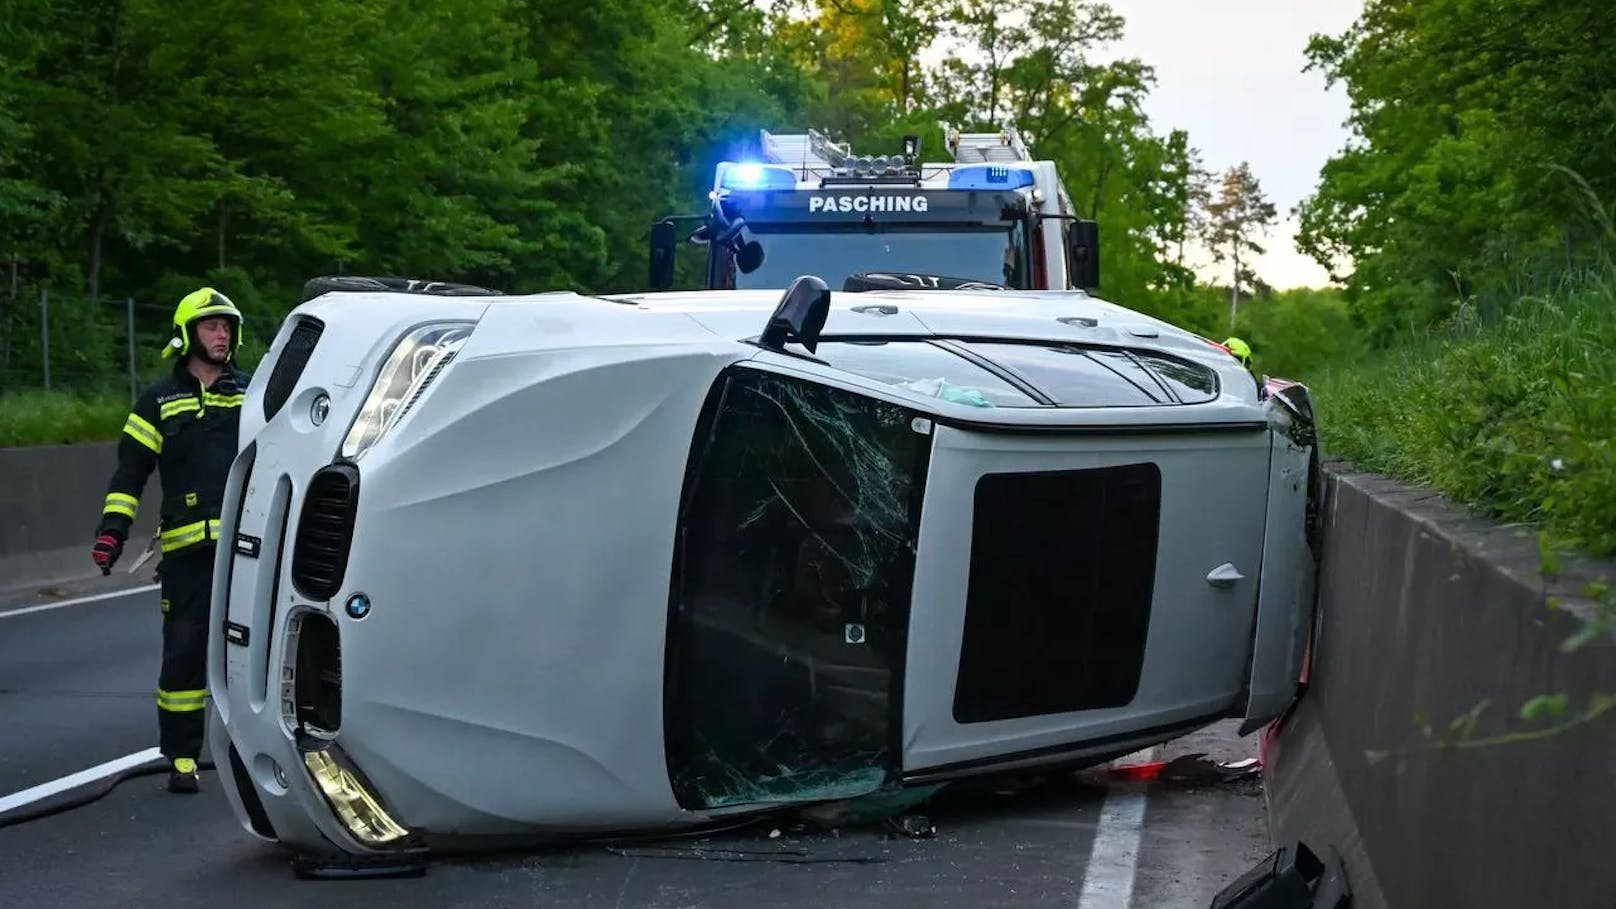 Am Sonntag, 5. Mai, ereignete sich gegen 19:30 Uhr ein Verkehrsunfall auf der B139 im Gemeindegebiet von Pasching, dessen Ursache noch unbekannt ist. Ein Fahrzeug kam dabei von der Straße ab und überschlug sich. Eine Person wurde dabei verletzt und musste vom Rettungsdienst versorgt werden.